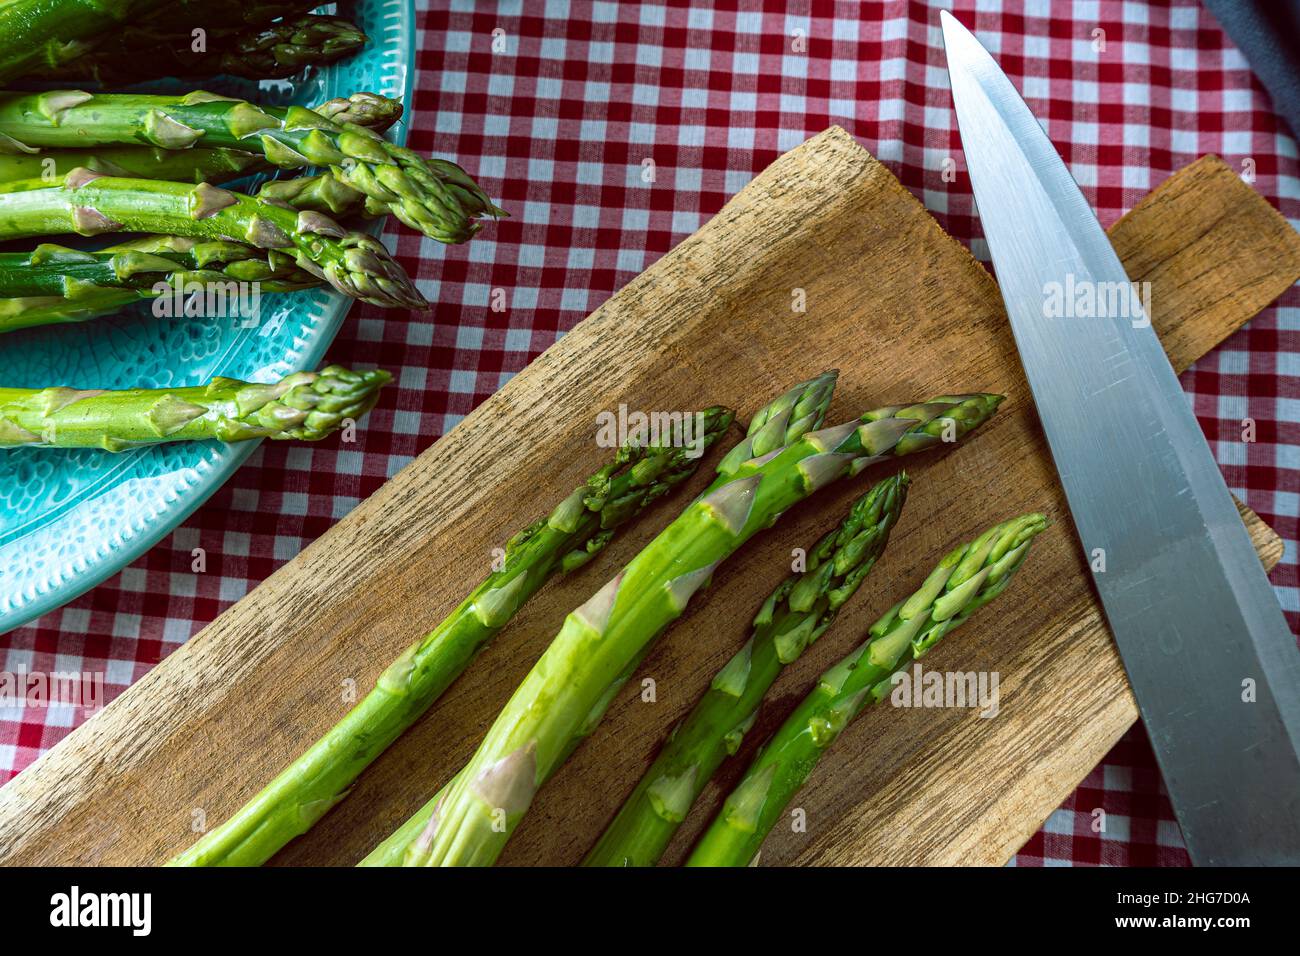 Un groupe d'asperges vertes sur une planche à découper en bois à côté d'un couteau sur une table avec une nappe à carreaux. Vue en hauteur, Banque D'Images